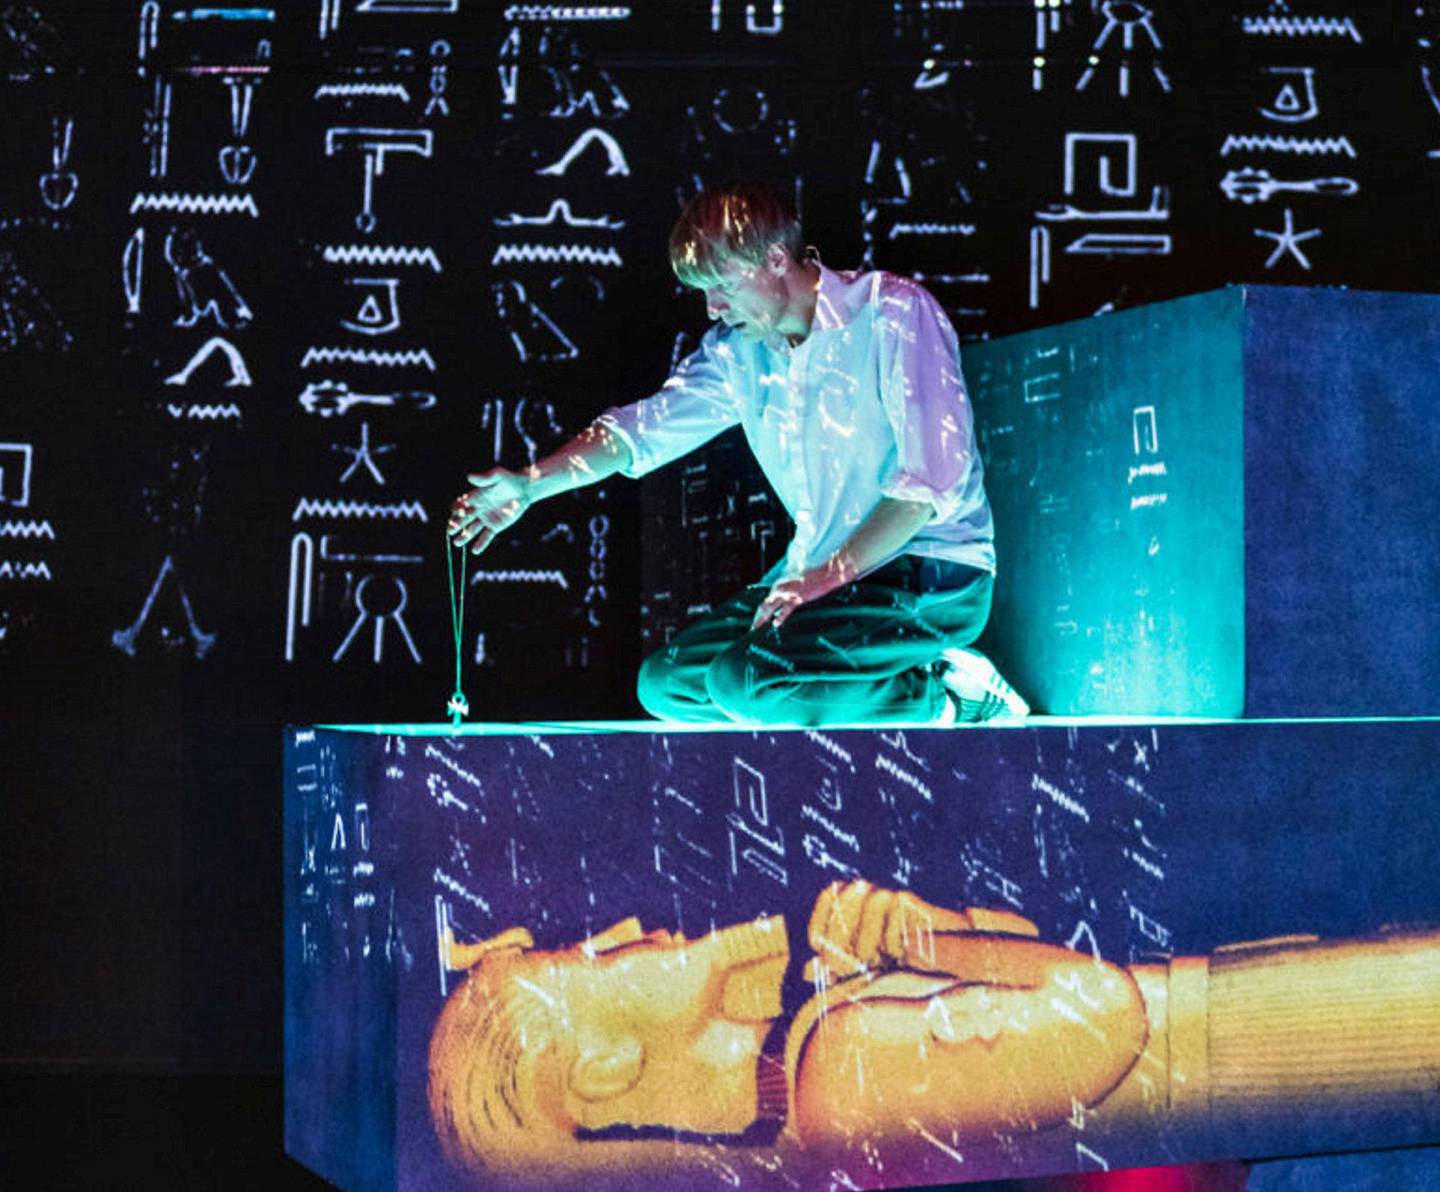 I forestillingen om den hyperaktive gutten Per Viggos reise til Egypt, er scenografien laget i et elegant samspill mellom data-/videoteknikk og fysiske byggemoduler i rommet.